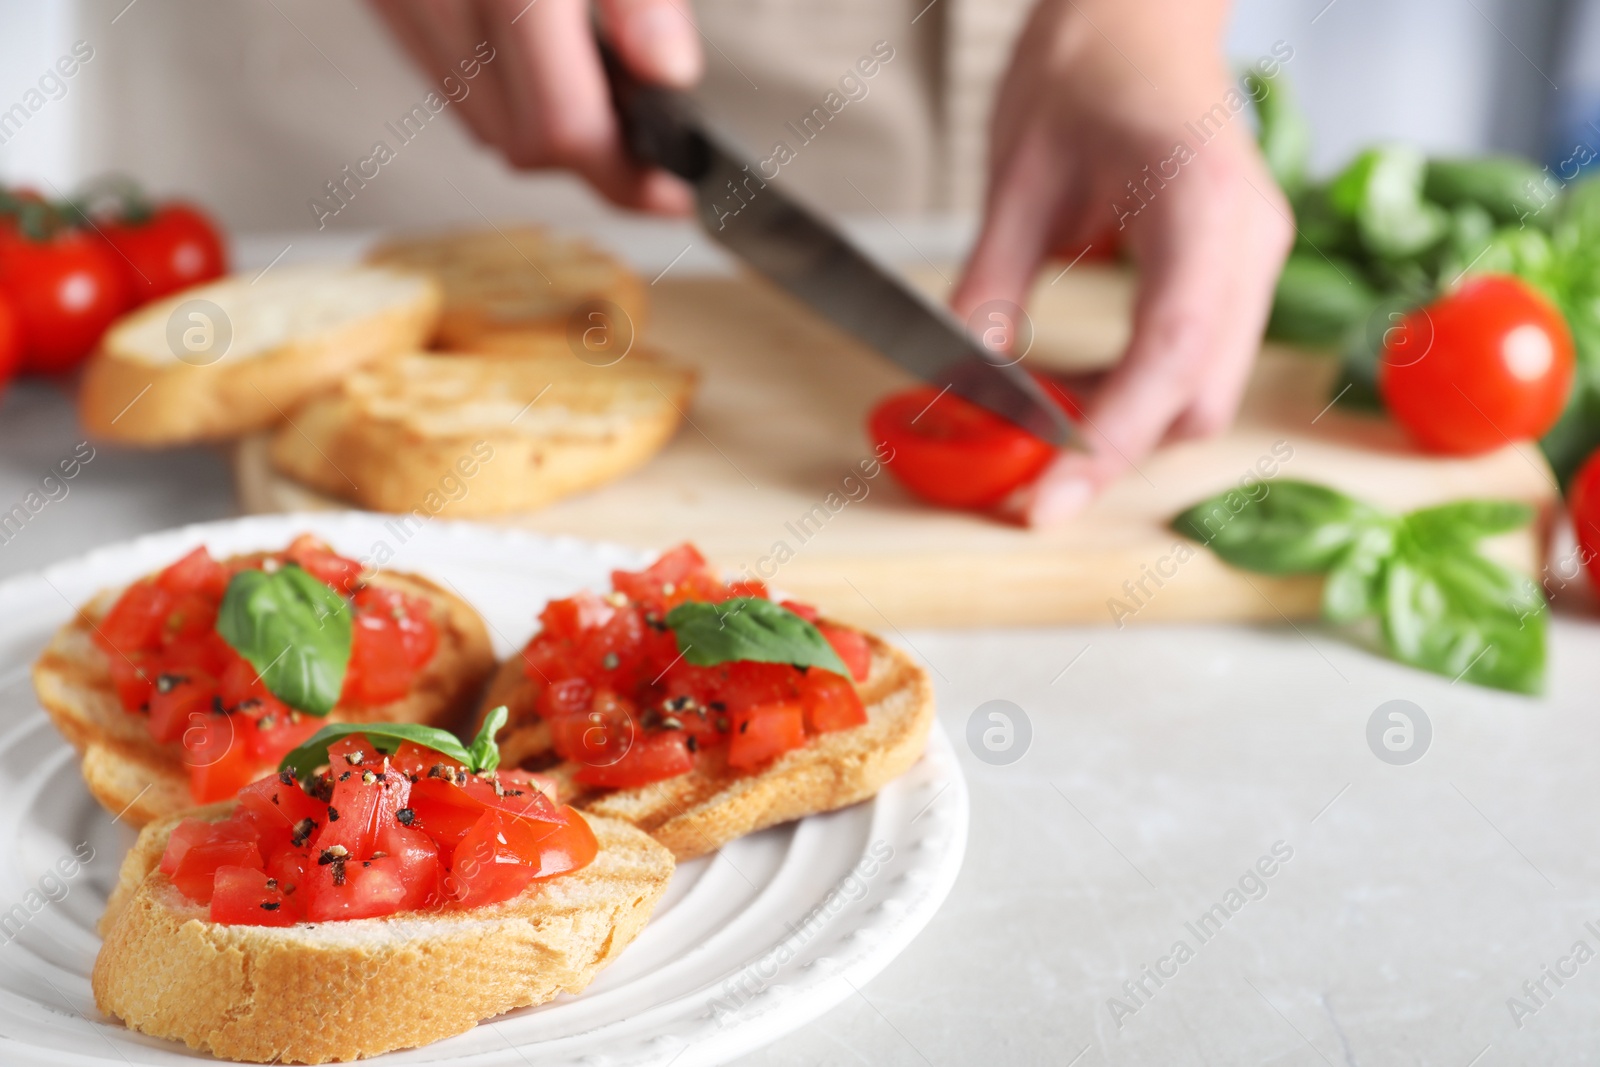 Photo of Woman cutting tomato at light grey table, focus on tasty bruschetta